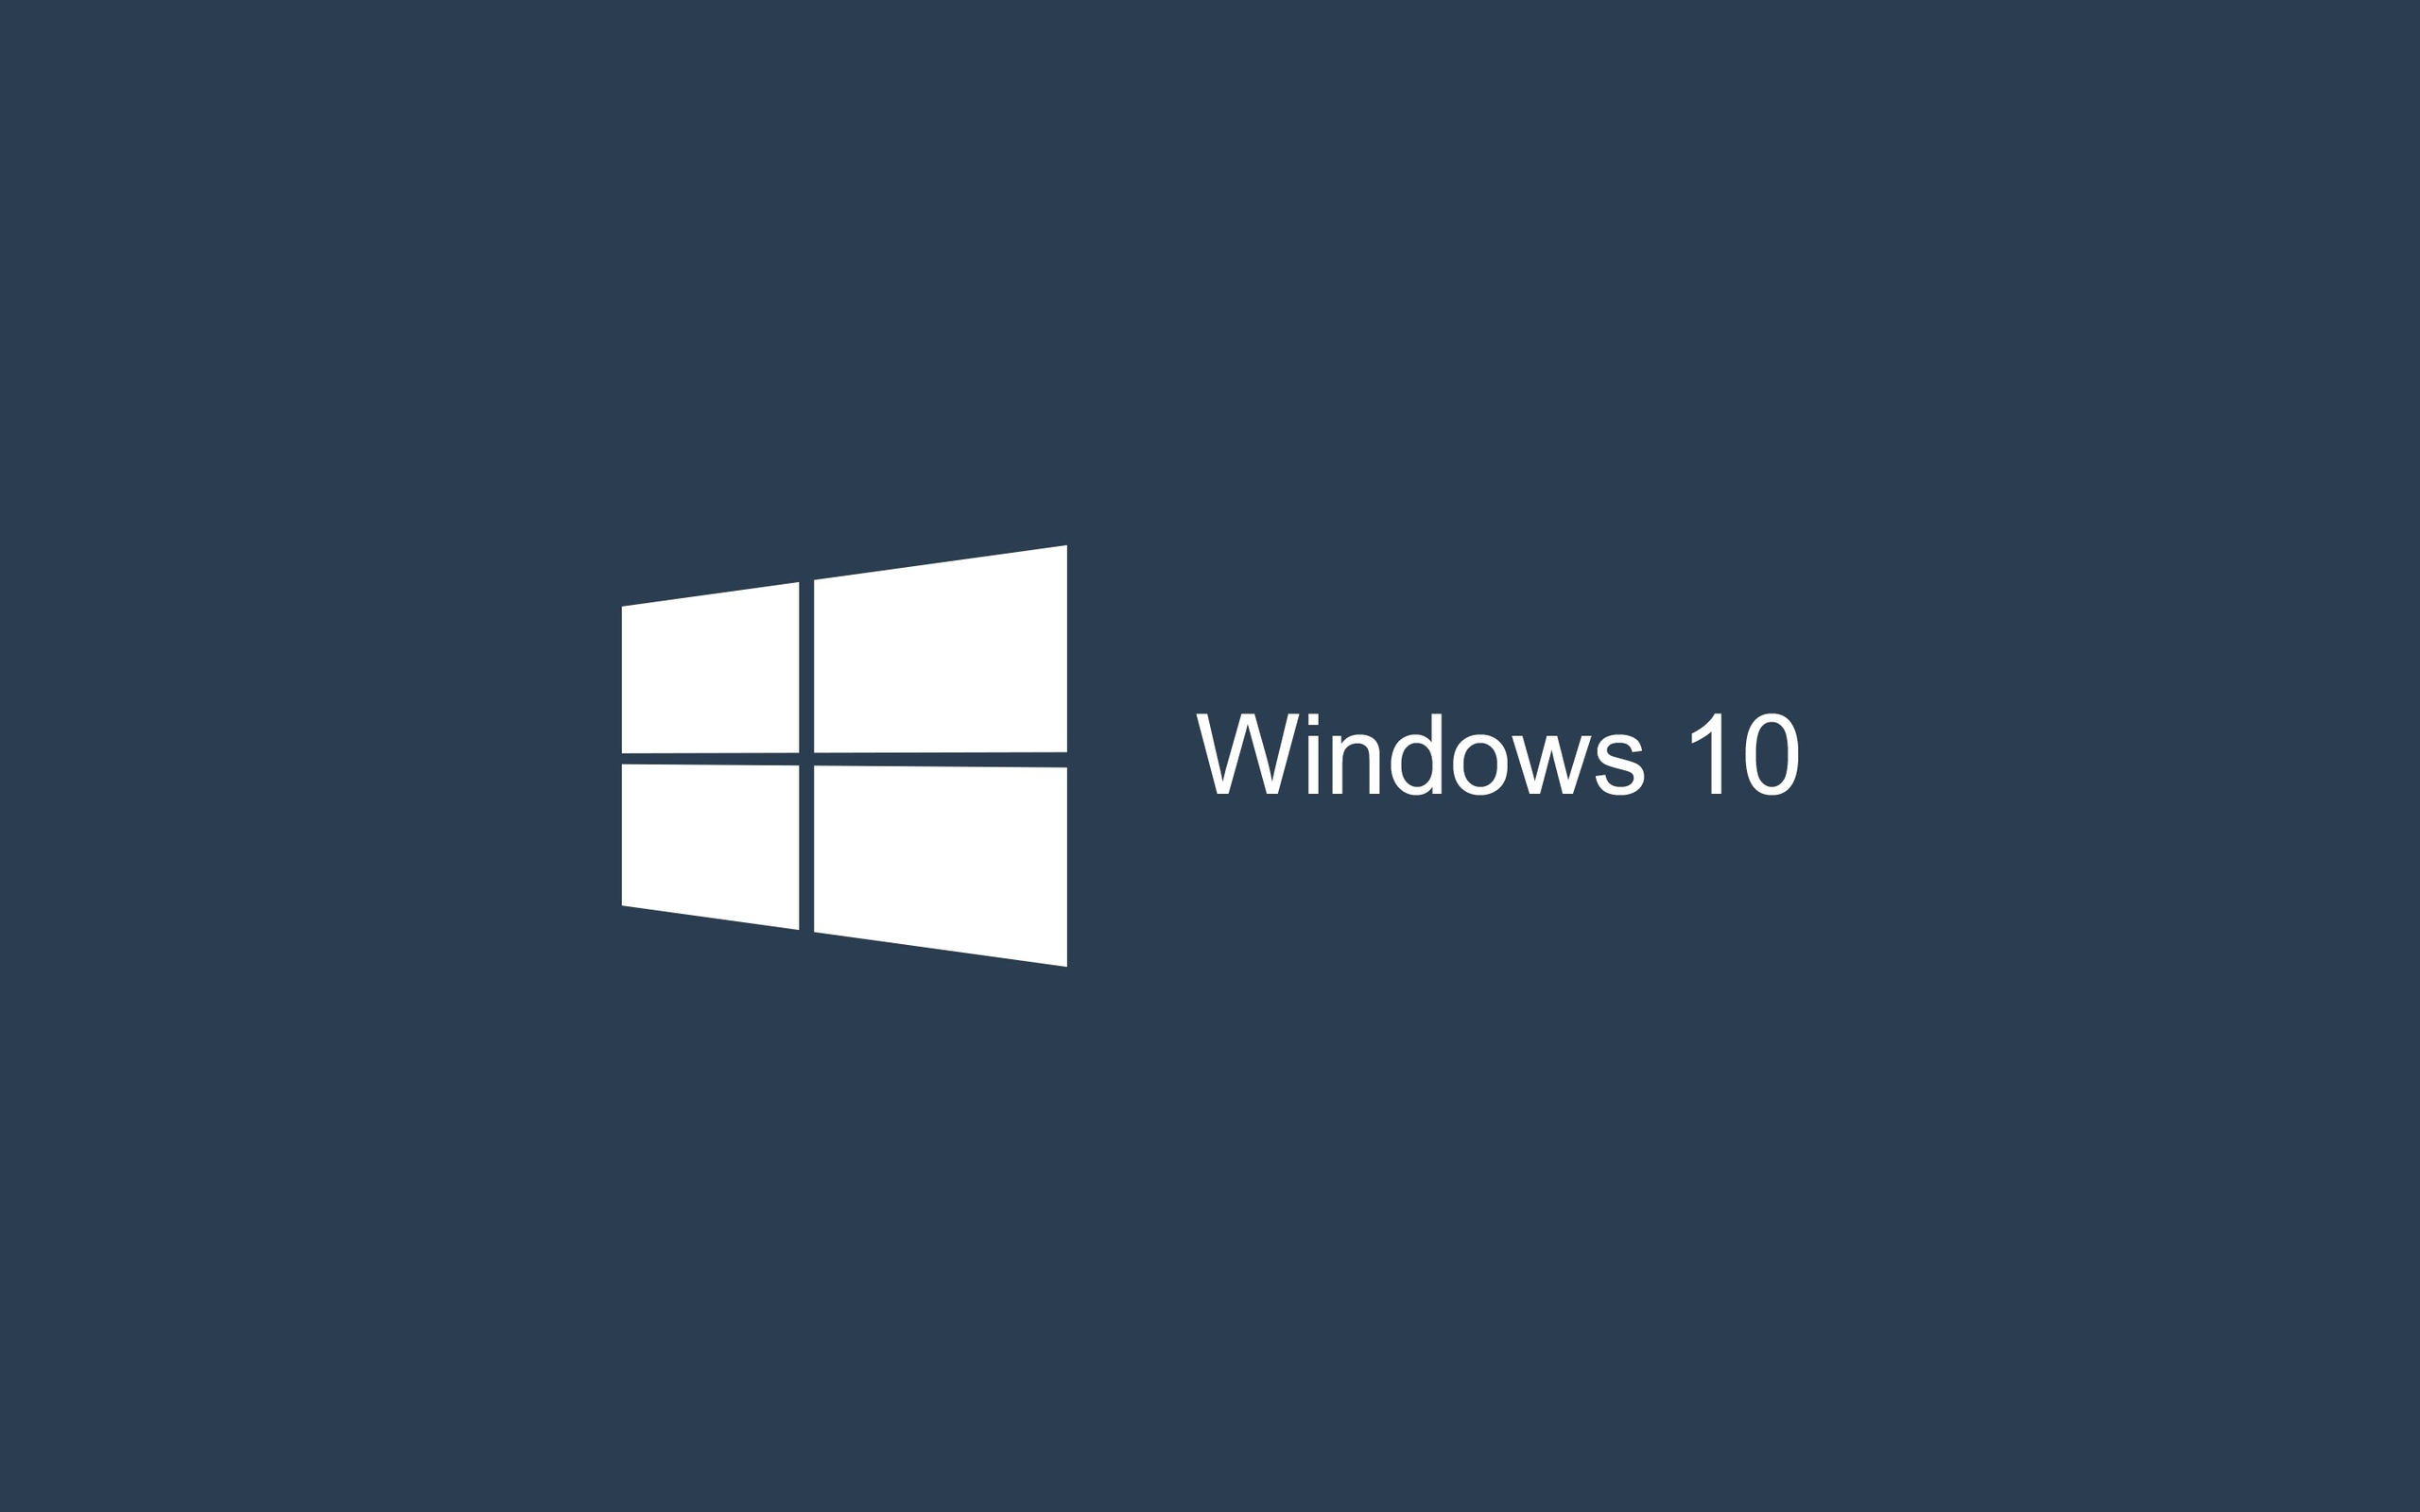 高清晰windows 10系统主题桌面壁纸下载 欧莱凯设计网 08php Com